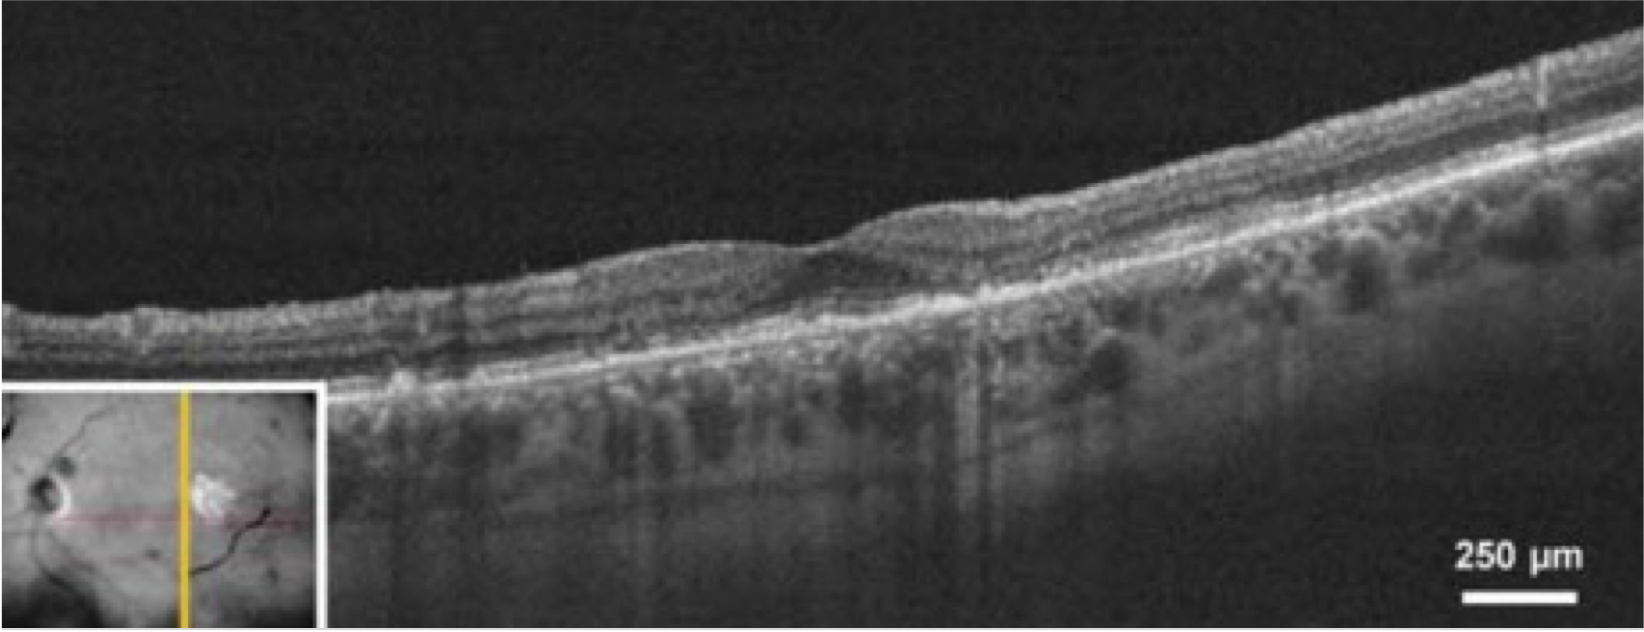 dryAMD.eu Immagine della tomografia a coerenza ottica (OTC) di un occhio.